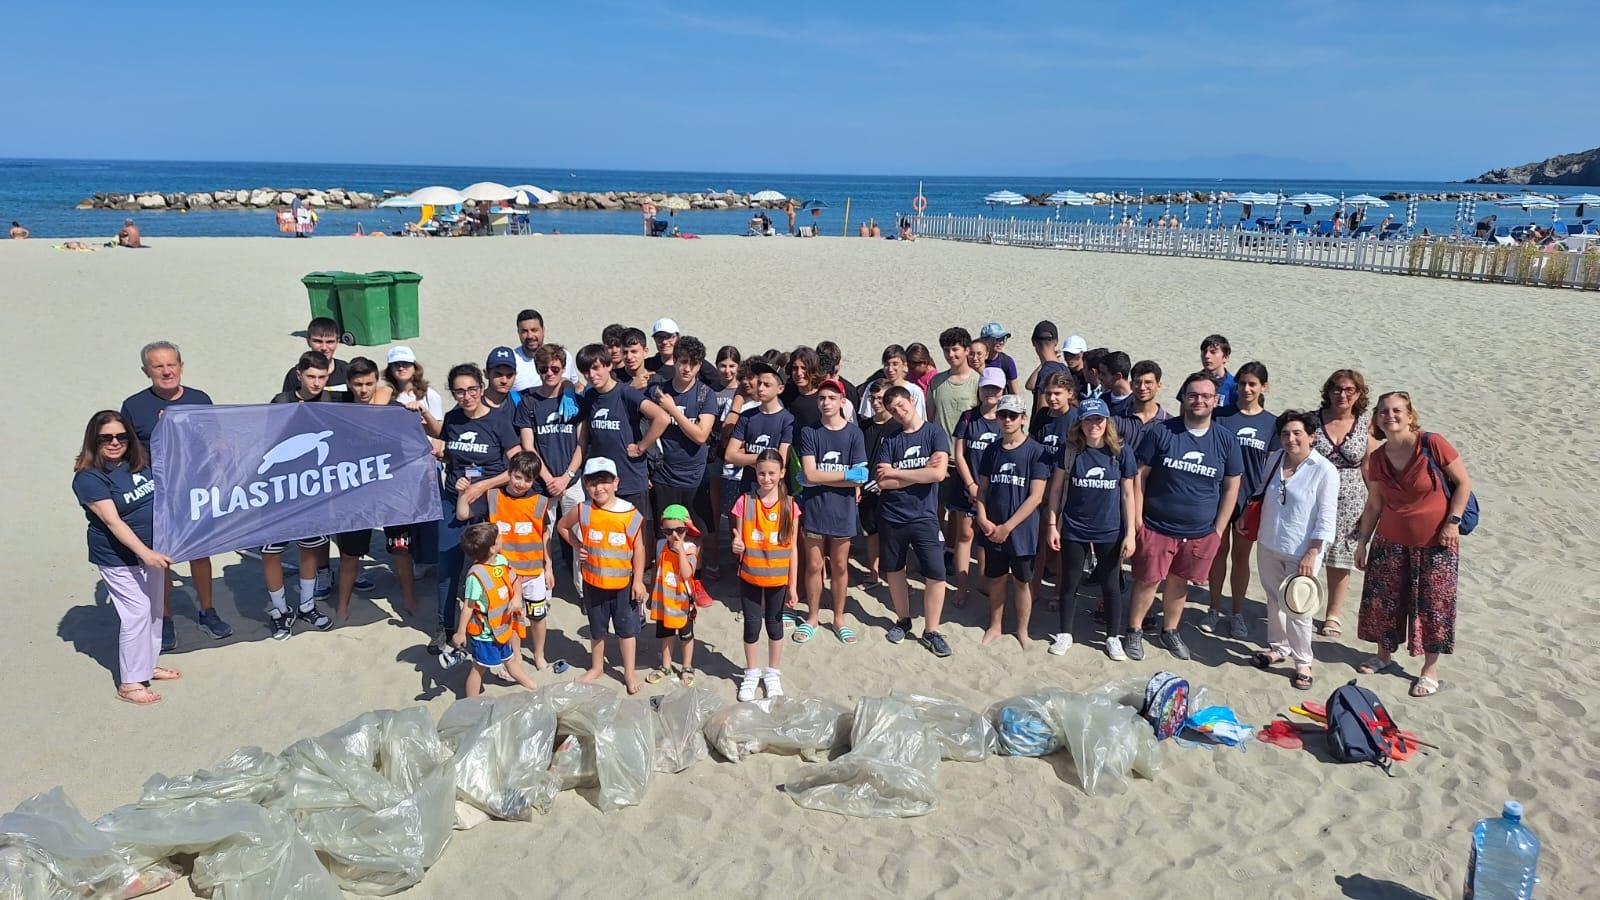 Un esercito di 156 volontari ripulisce la spiaggia di Forio d’Ischia (NA) per la Giornata dell'Ambiente e degli Oceani